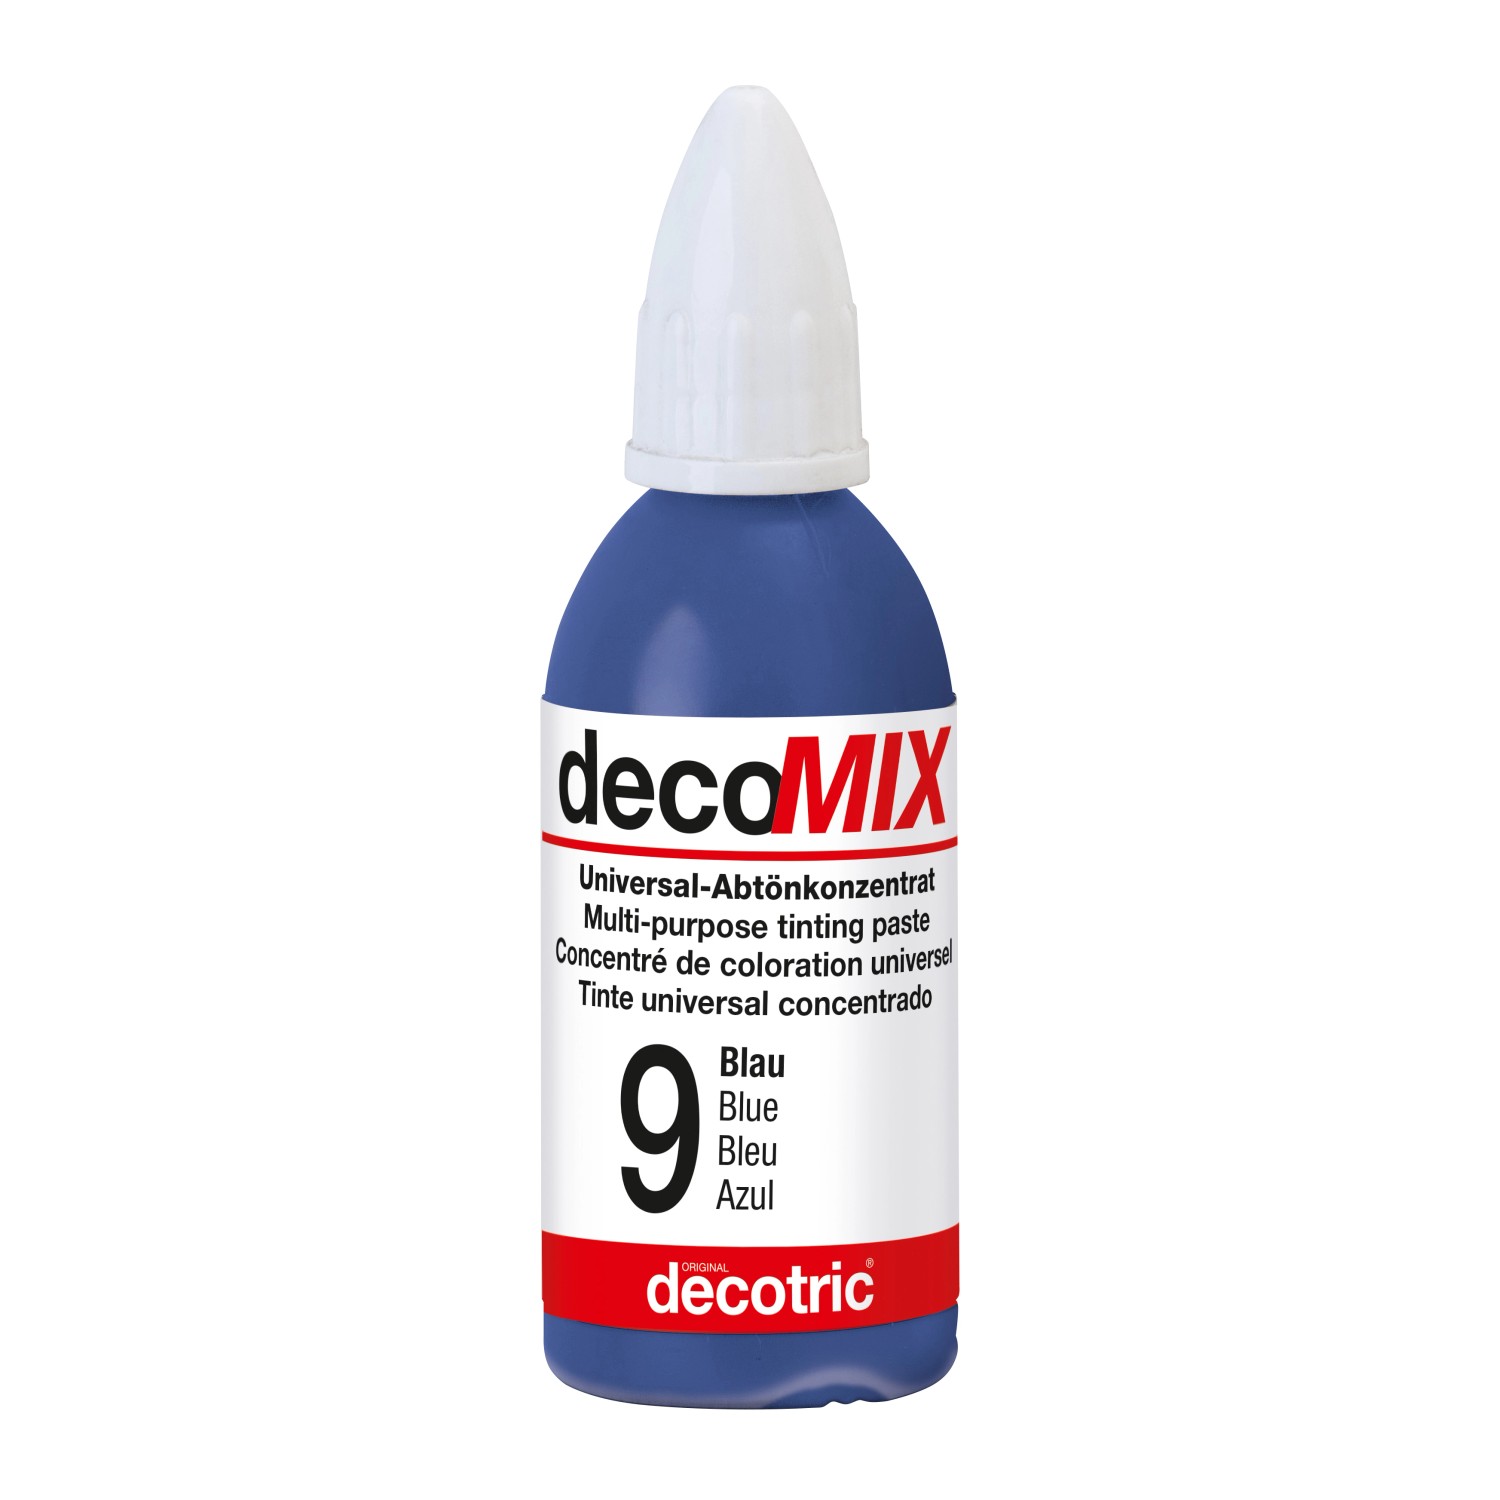 Decomix Universal-Abtönkonzentrat Blau 20 ml von decotric